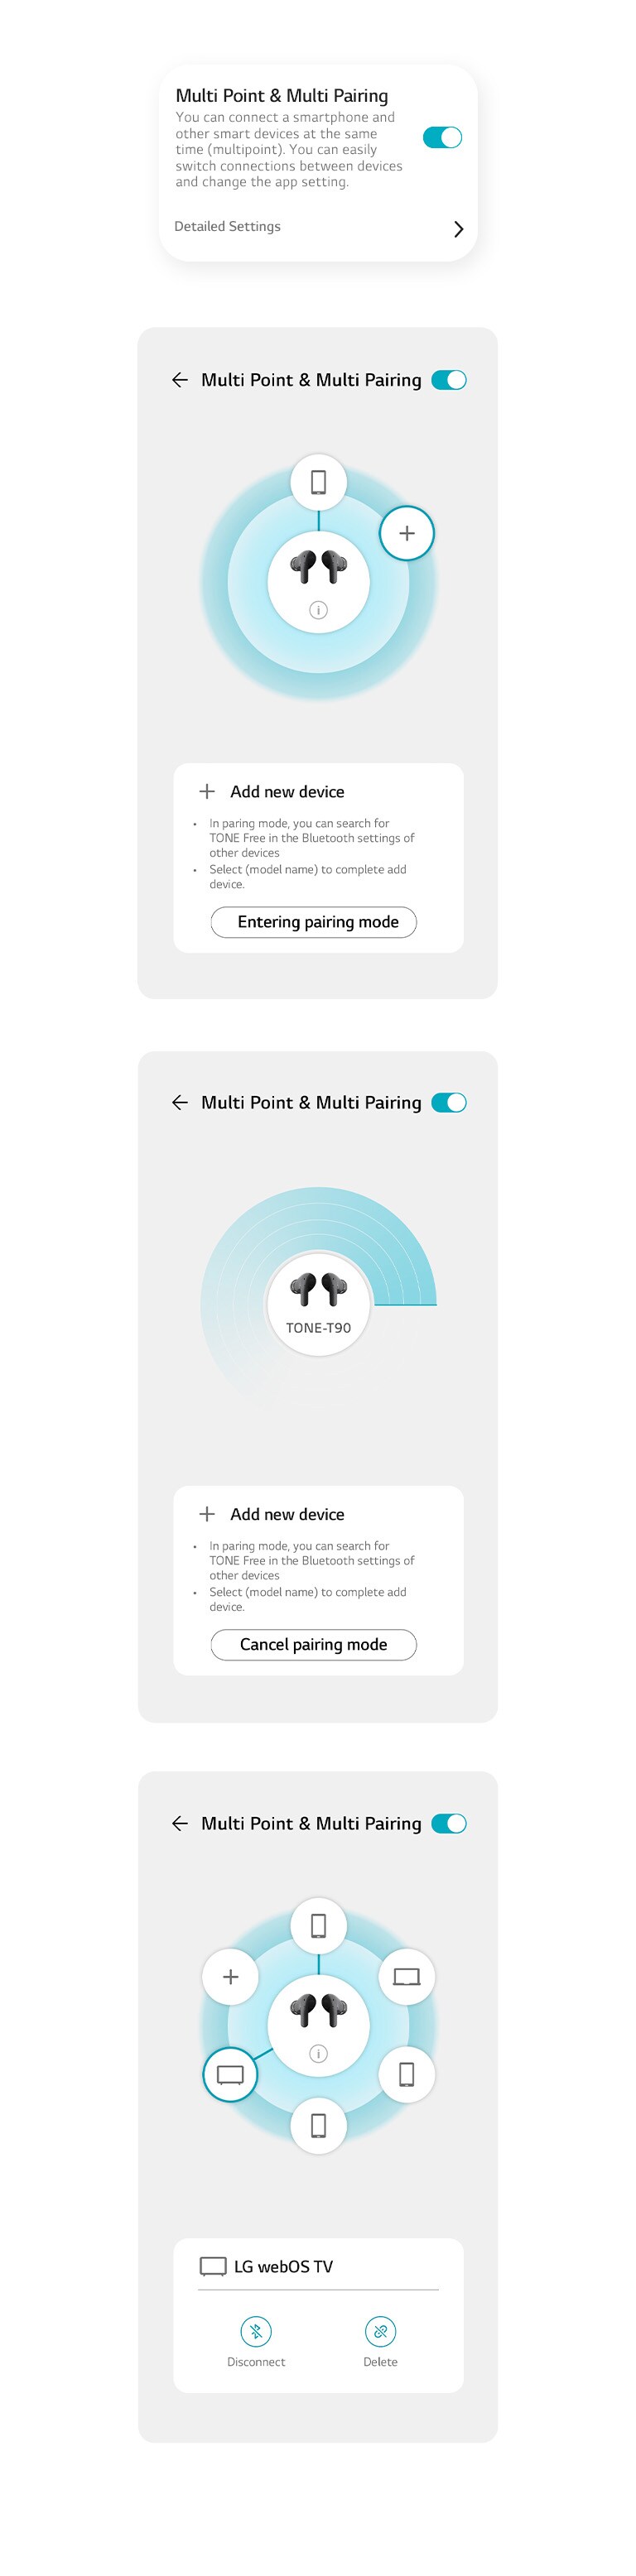 Bilder der Multipoint- und Multipairing-Funktionen auf der App.